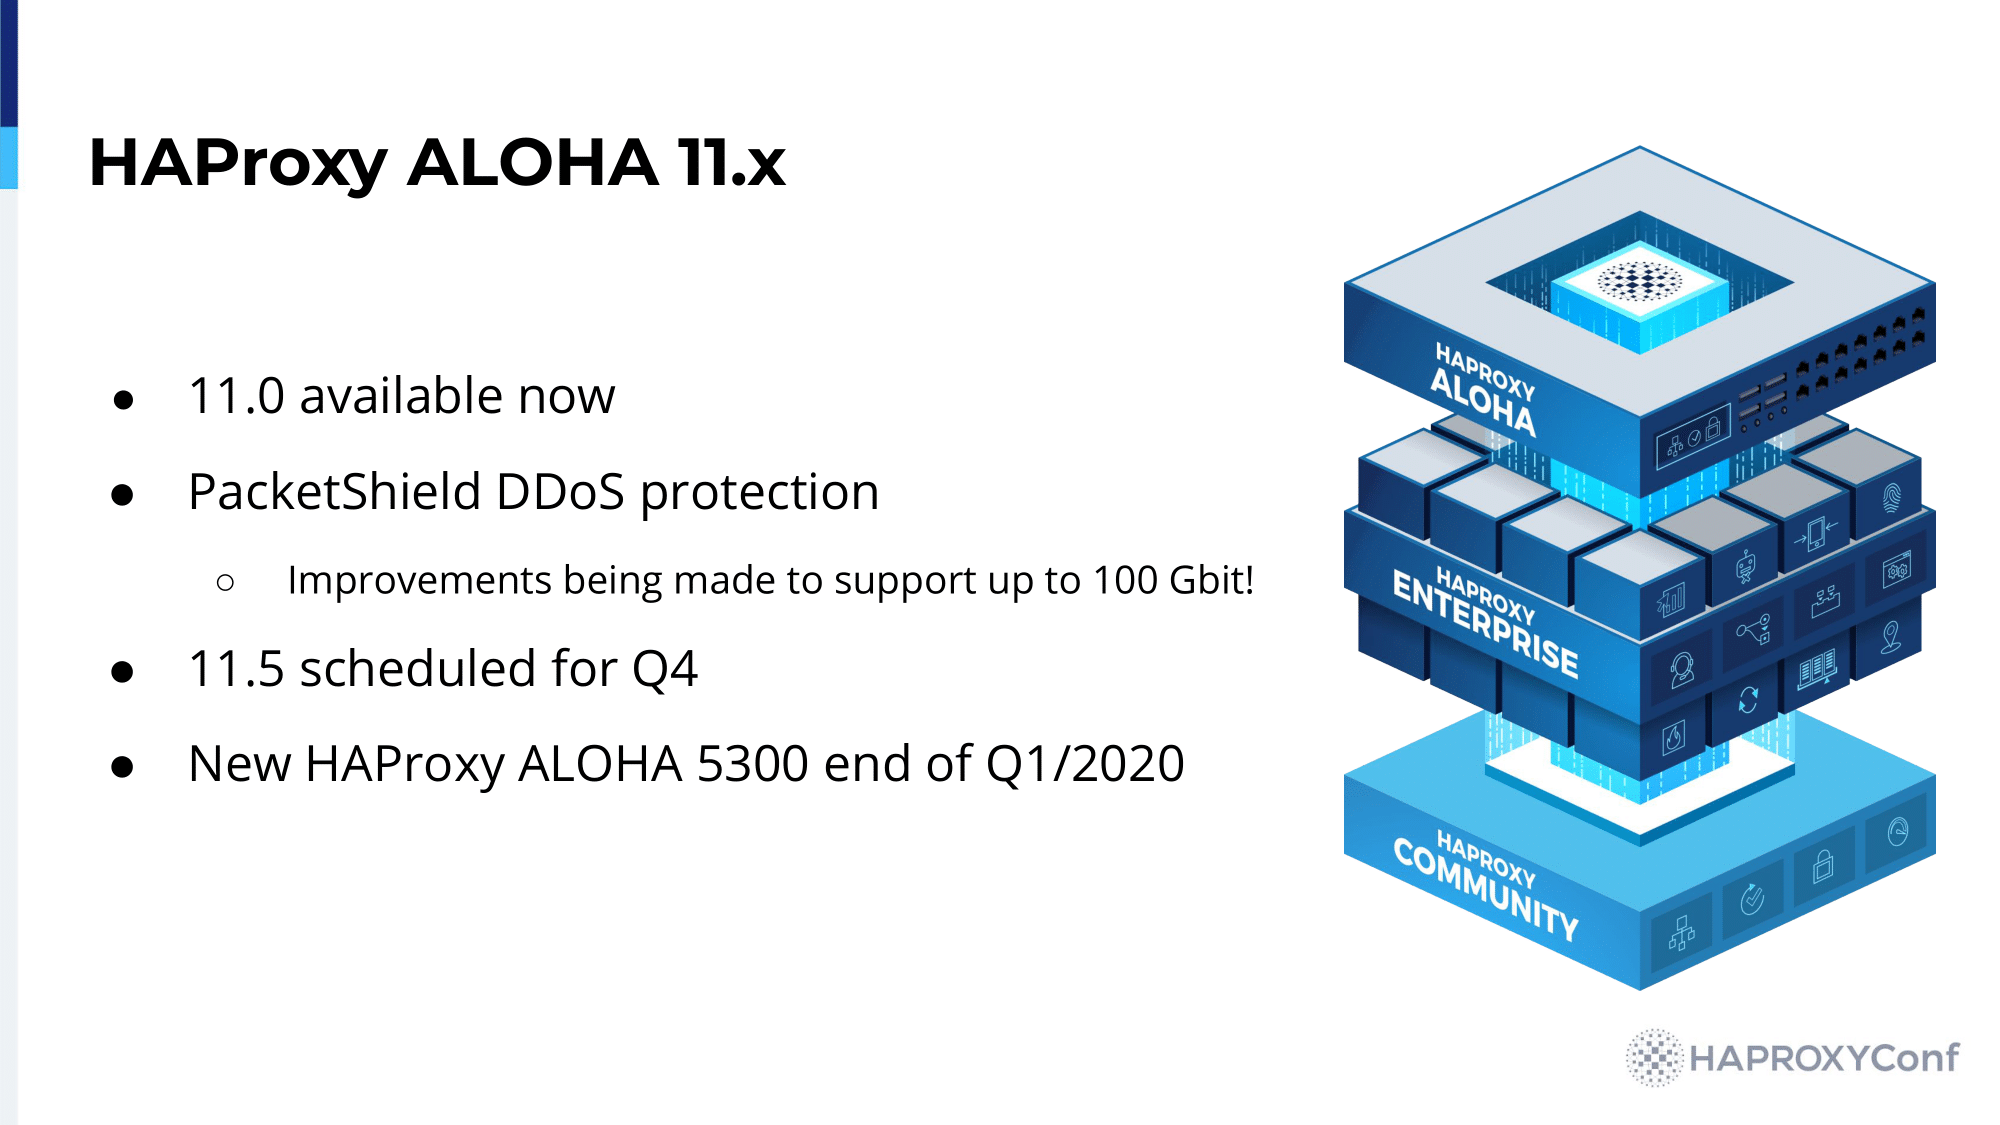 21.-haproxy-aloha-11.x